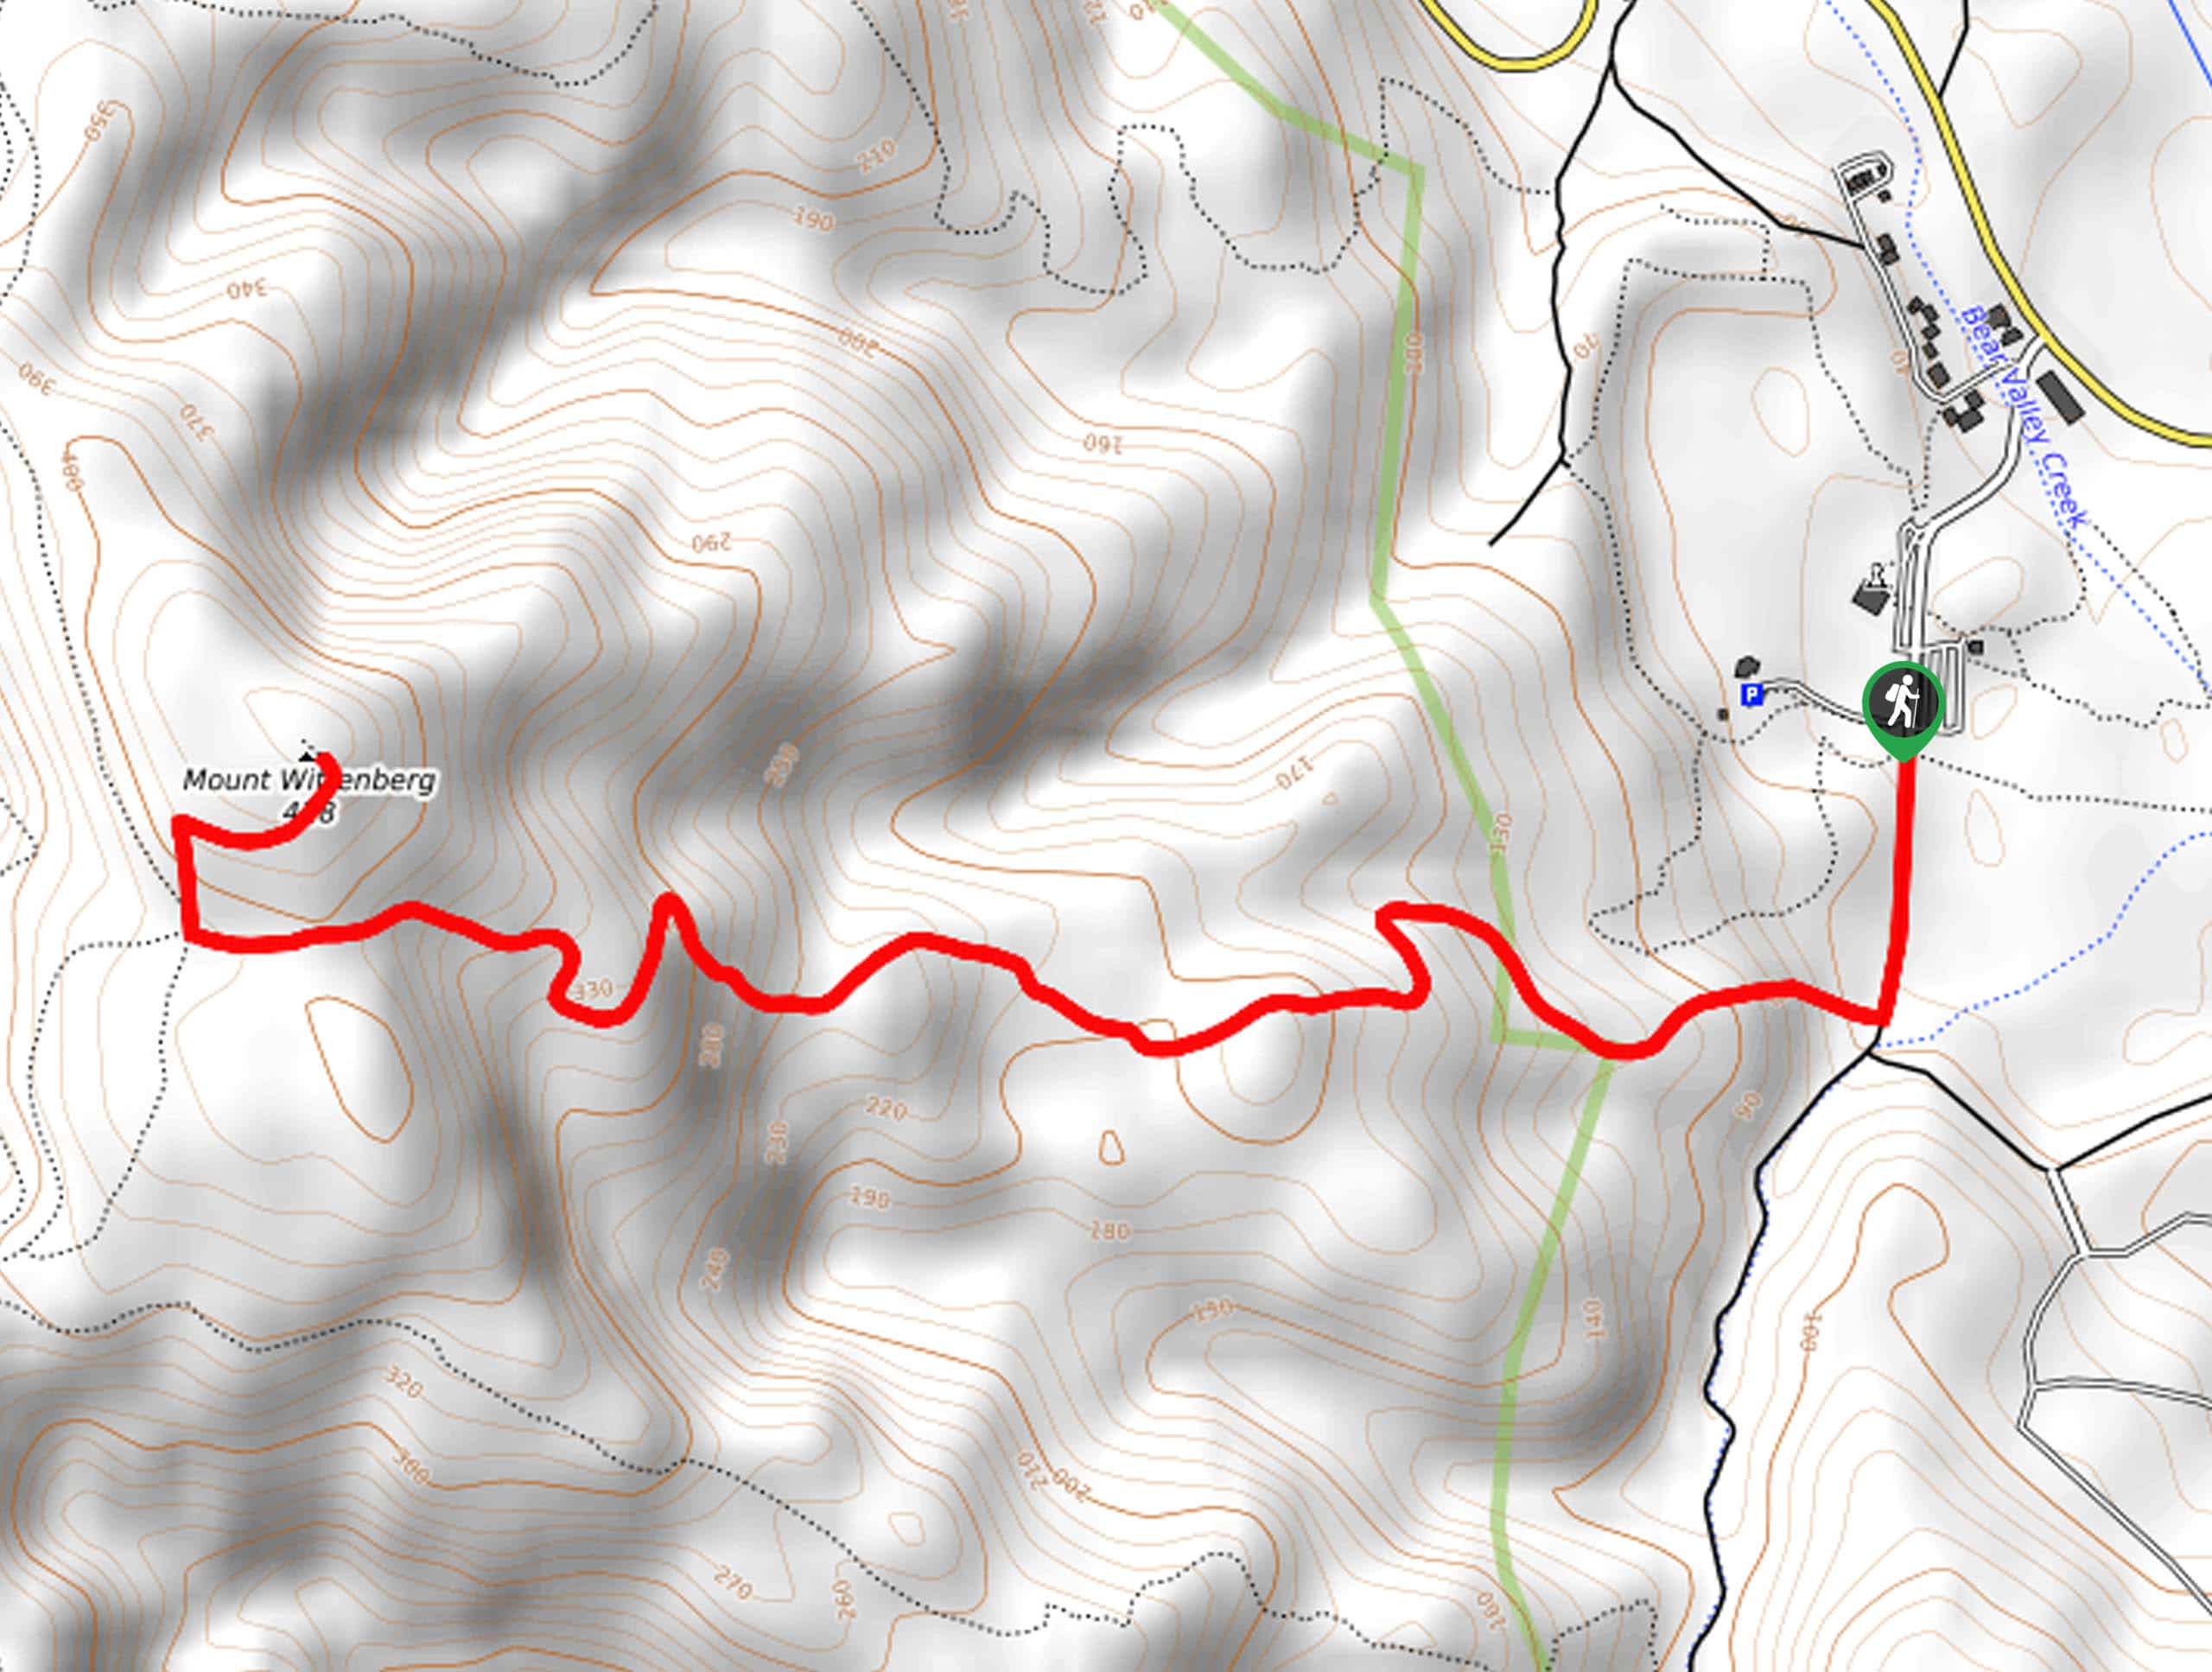 Mount Wittenburg Trail Map